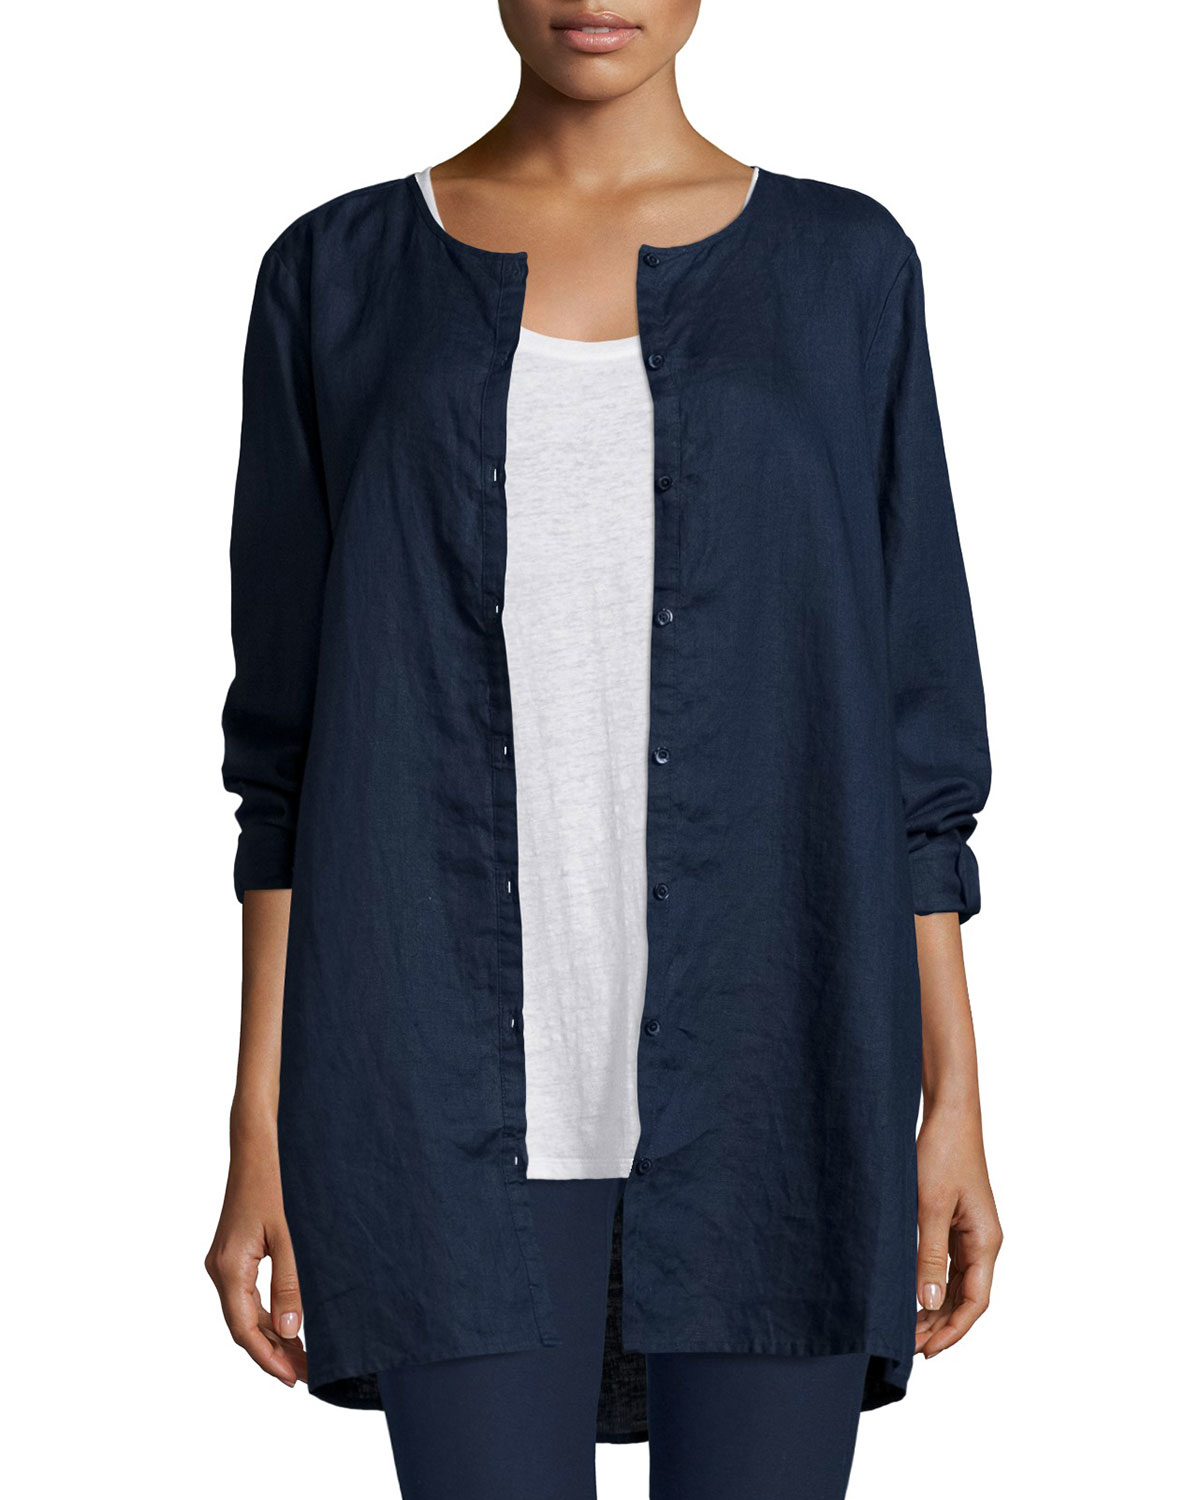 Lyst - Eileen Fisher Organic Linen Long Shirt in Blue